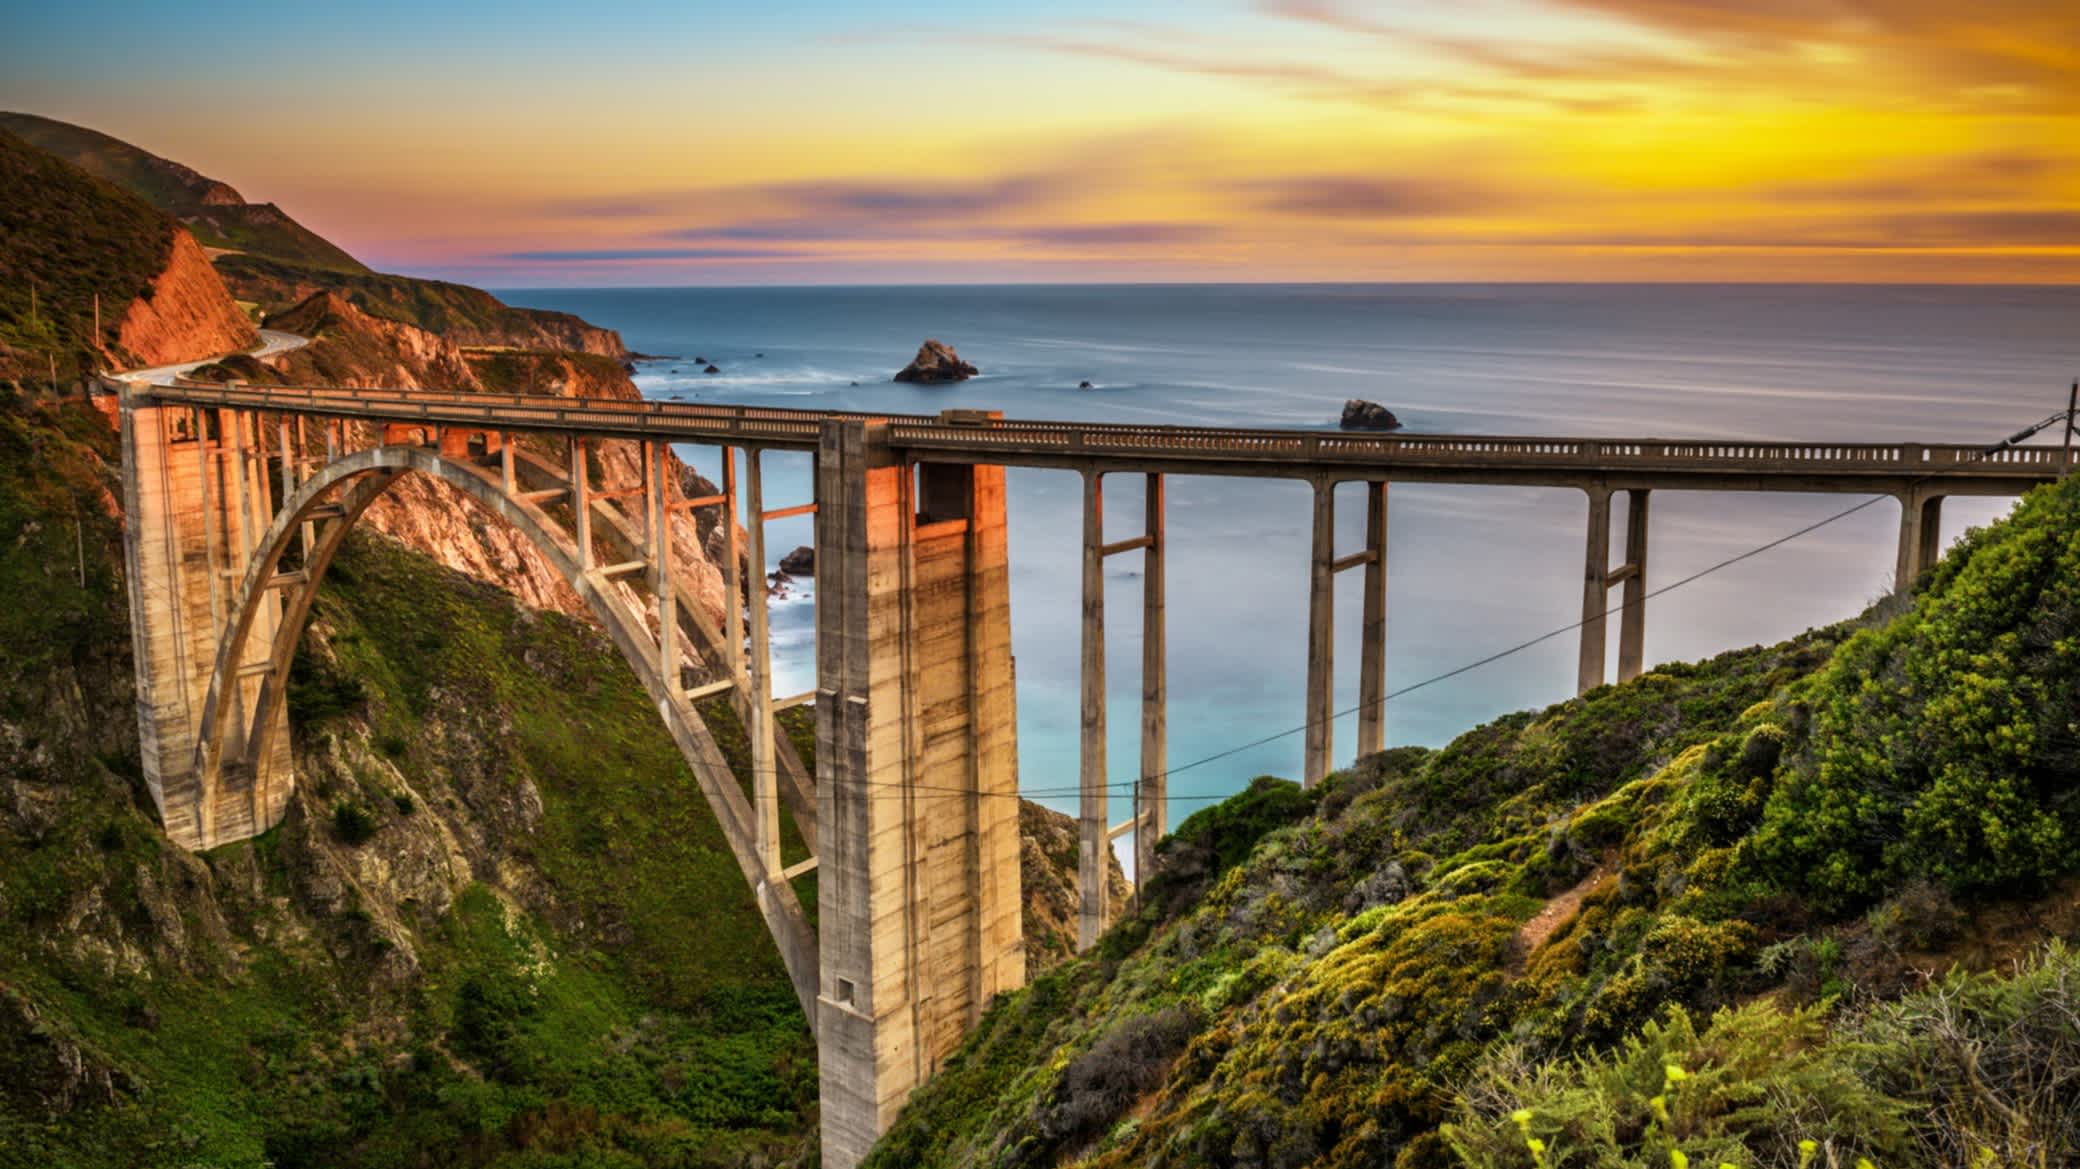 Le pont de Bixby Bridge et la célèbre route Pacific Coast Highway au coucher du soleil près de Big Sur en Californie, États-Unis.